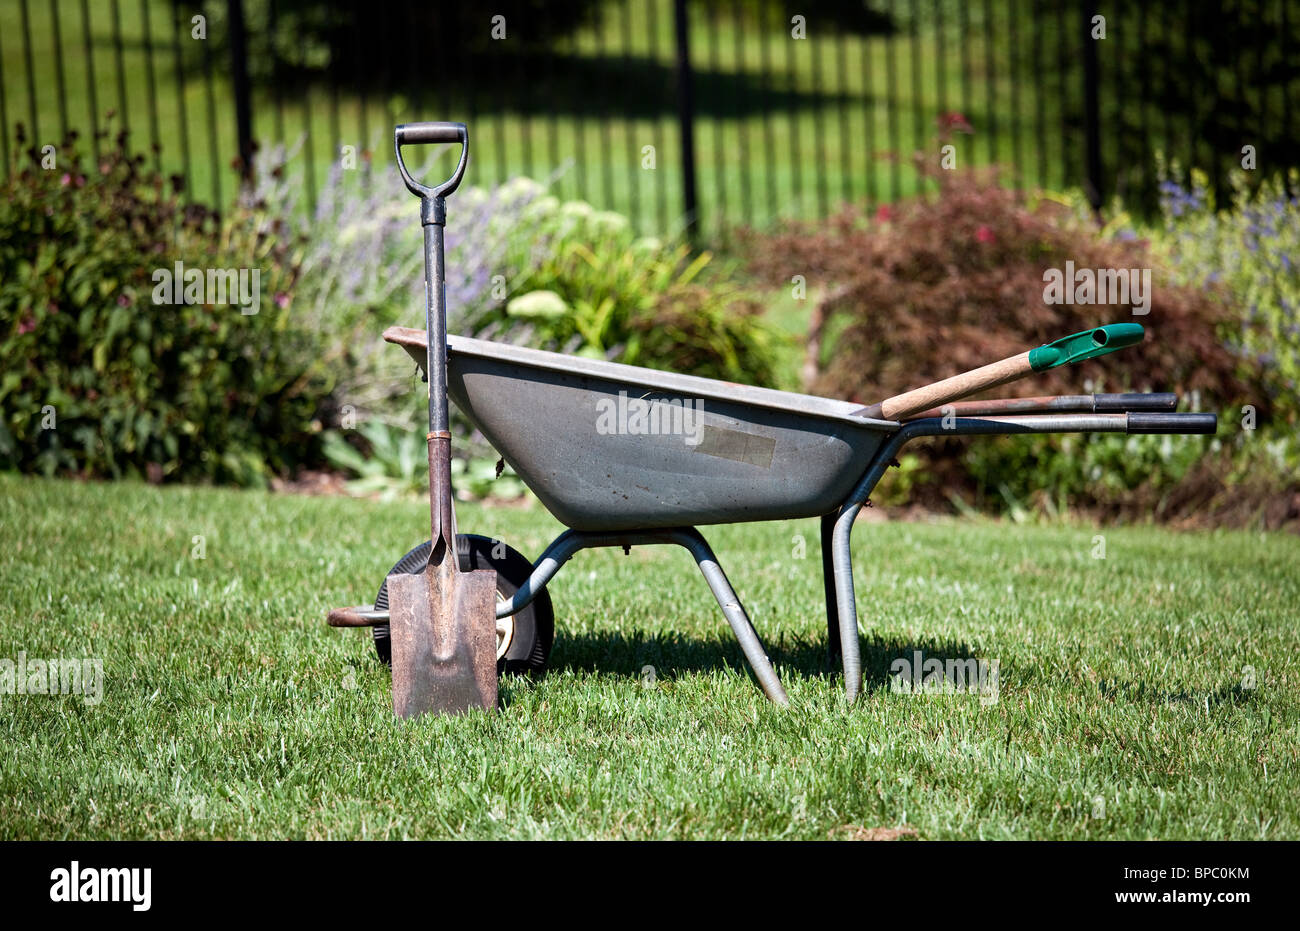 Garten Werkzeuge - Spaten Gleitstift gegen eine Schubkarre in einem Garten Stockfoto